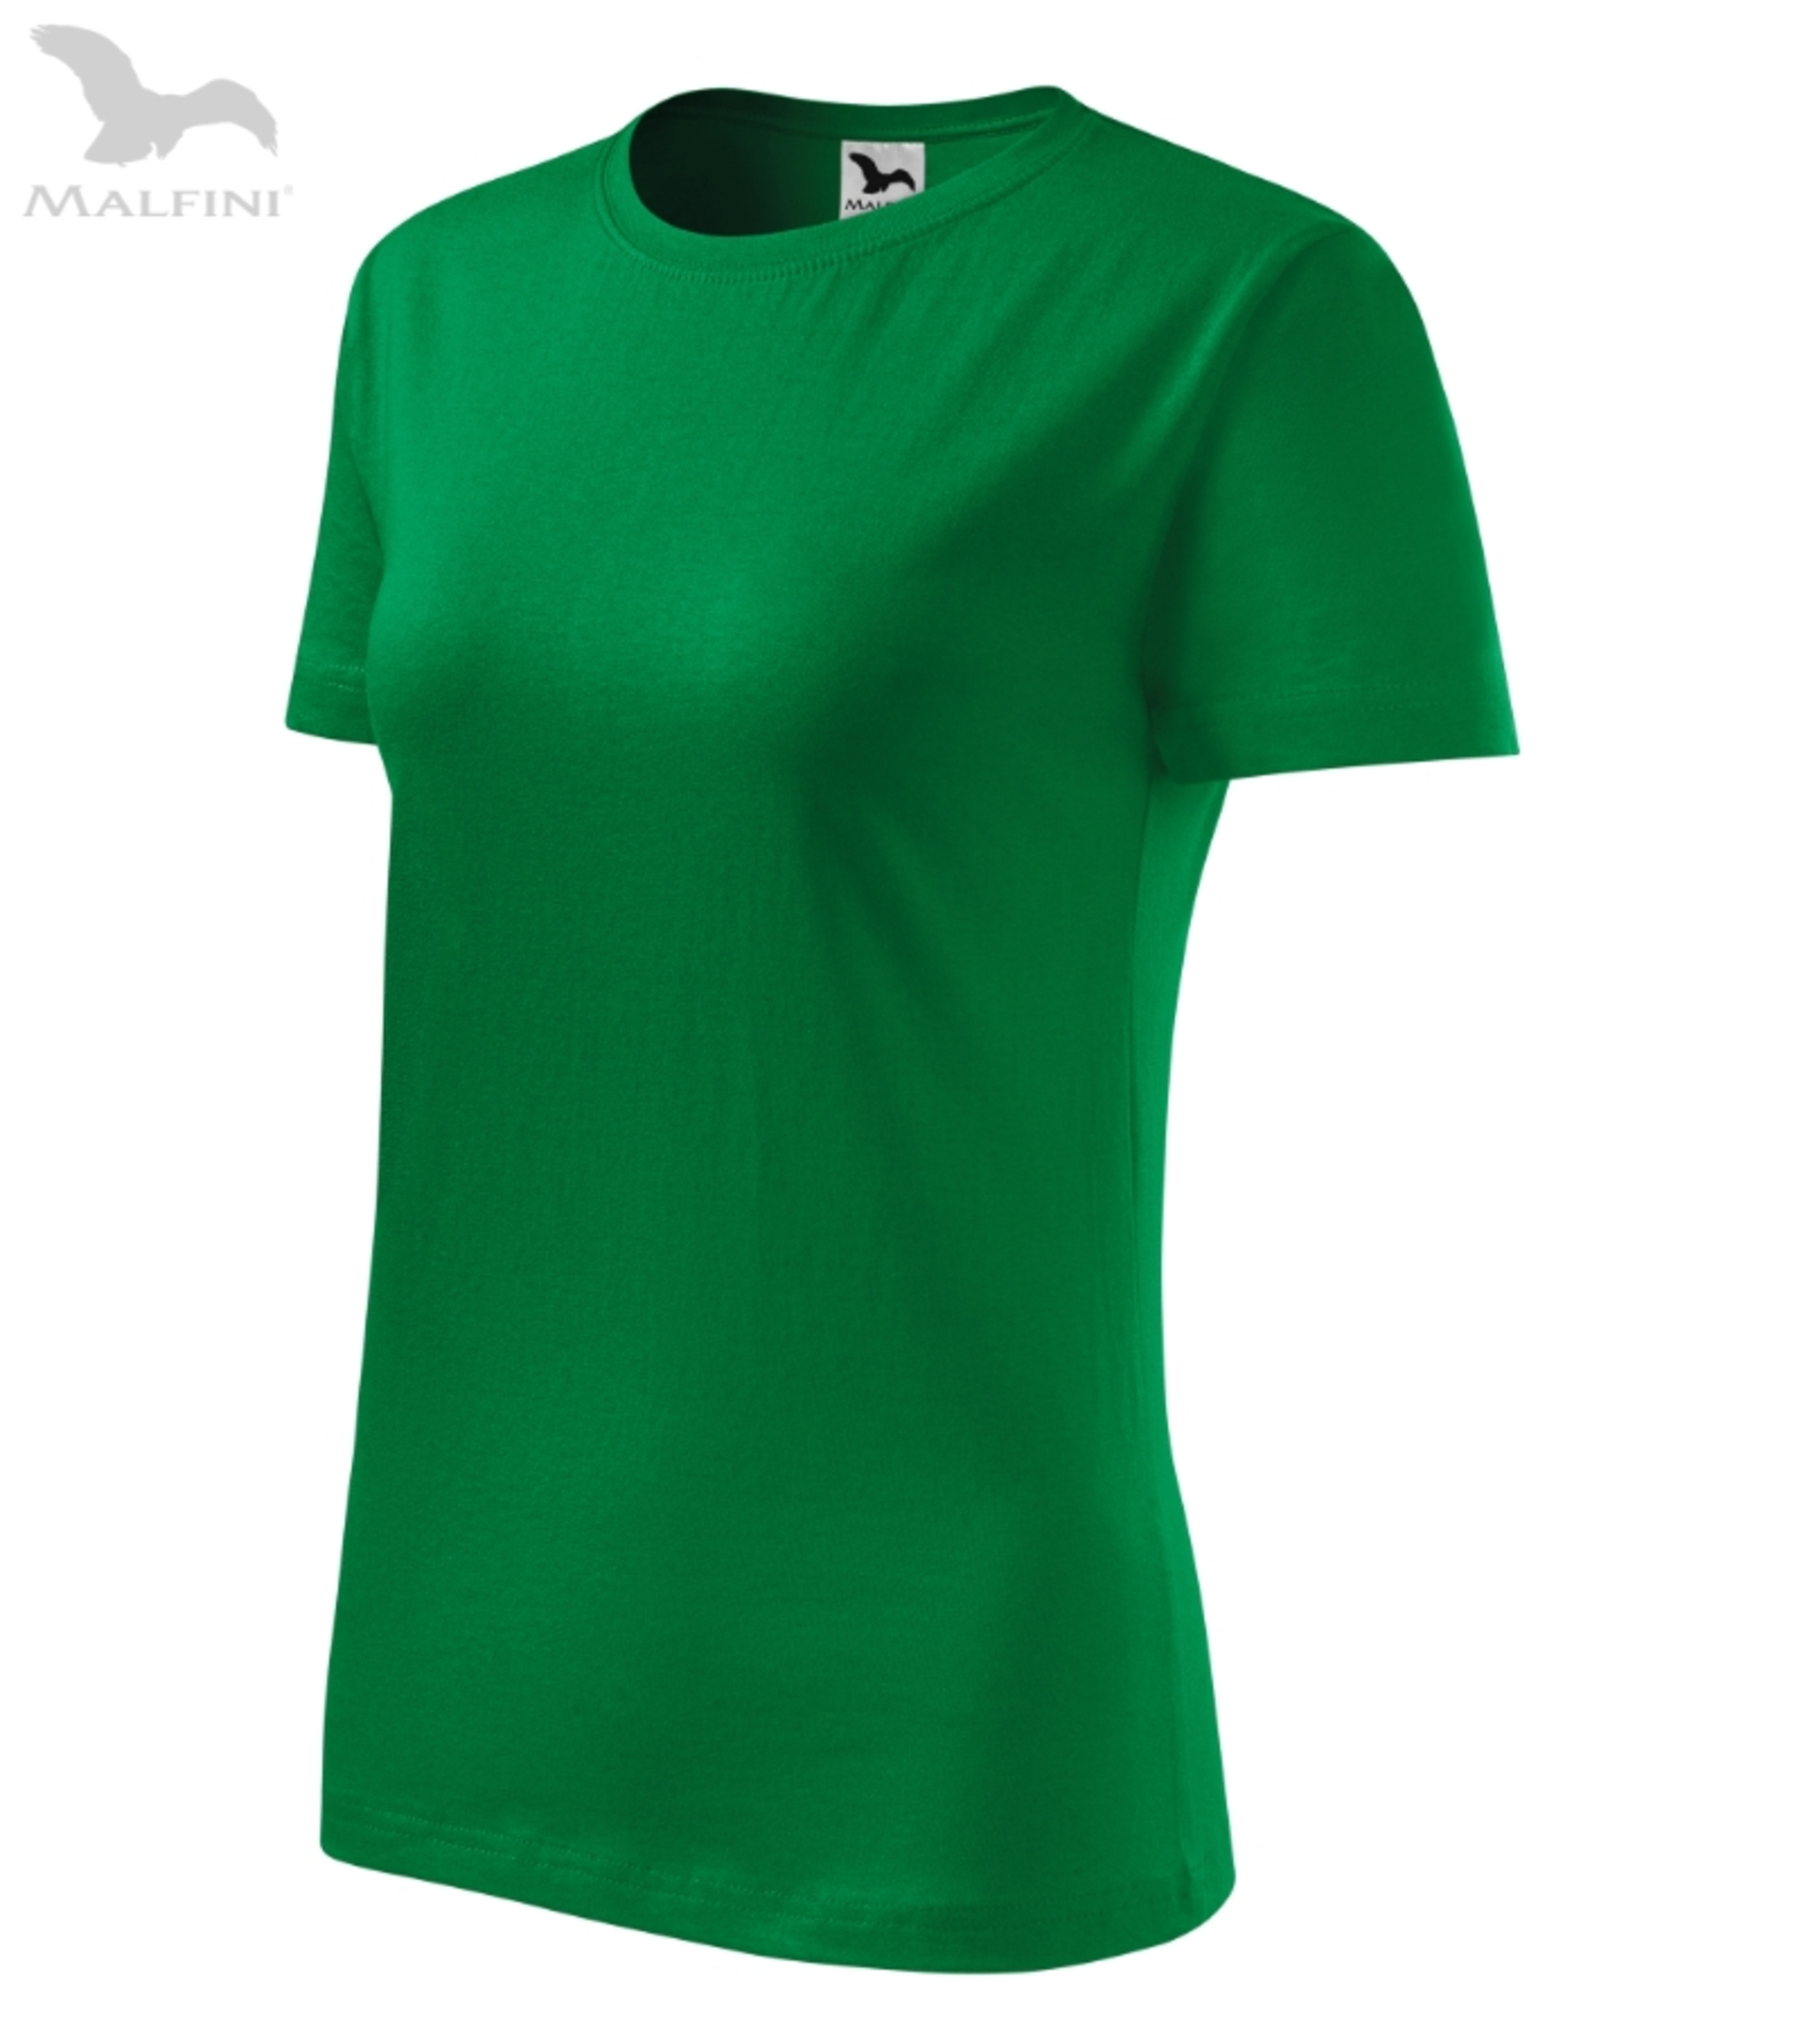 Levně Malfini ADLER CLASSIC NEW dámské Tričko středně zelená M + Bezplatné vrácení zboží